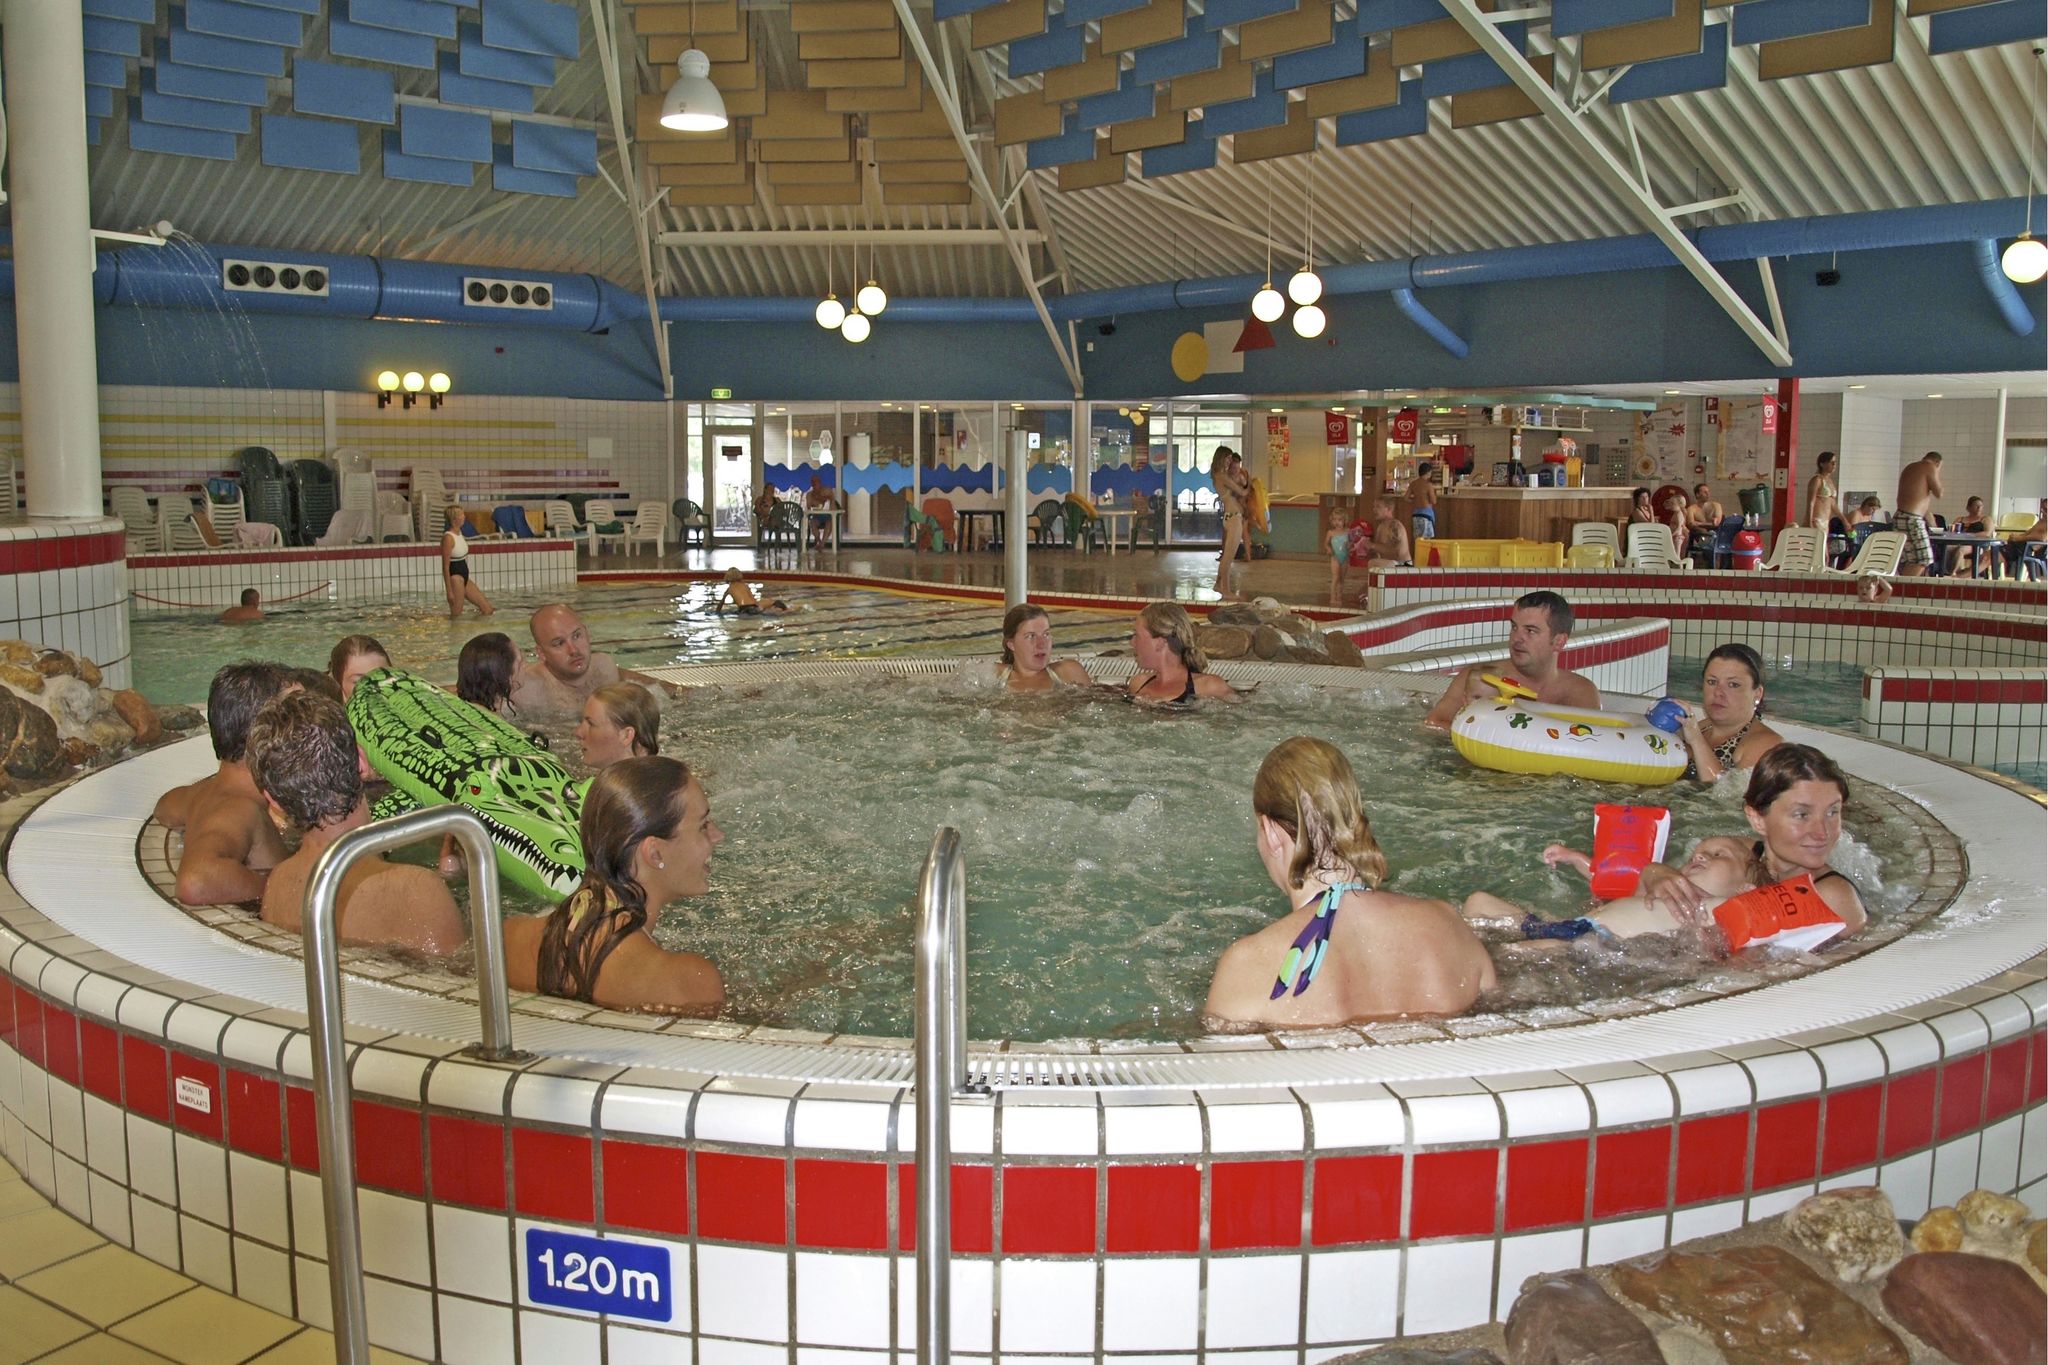 Gerestyld vakantiehuis op vakantiepark op Texel met faciliteiten zoals zwembad